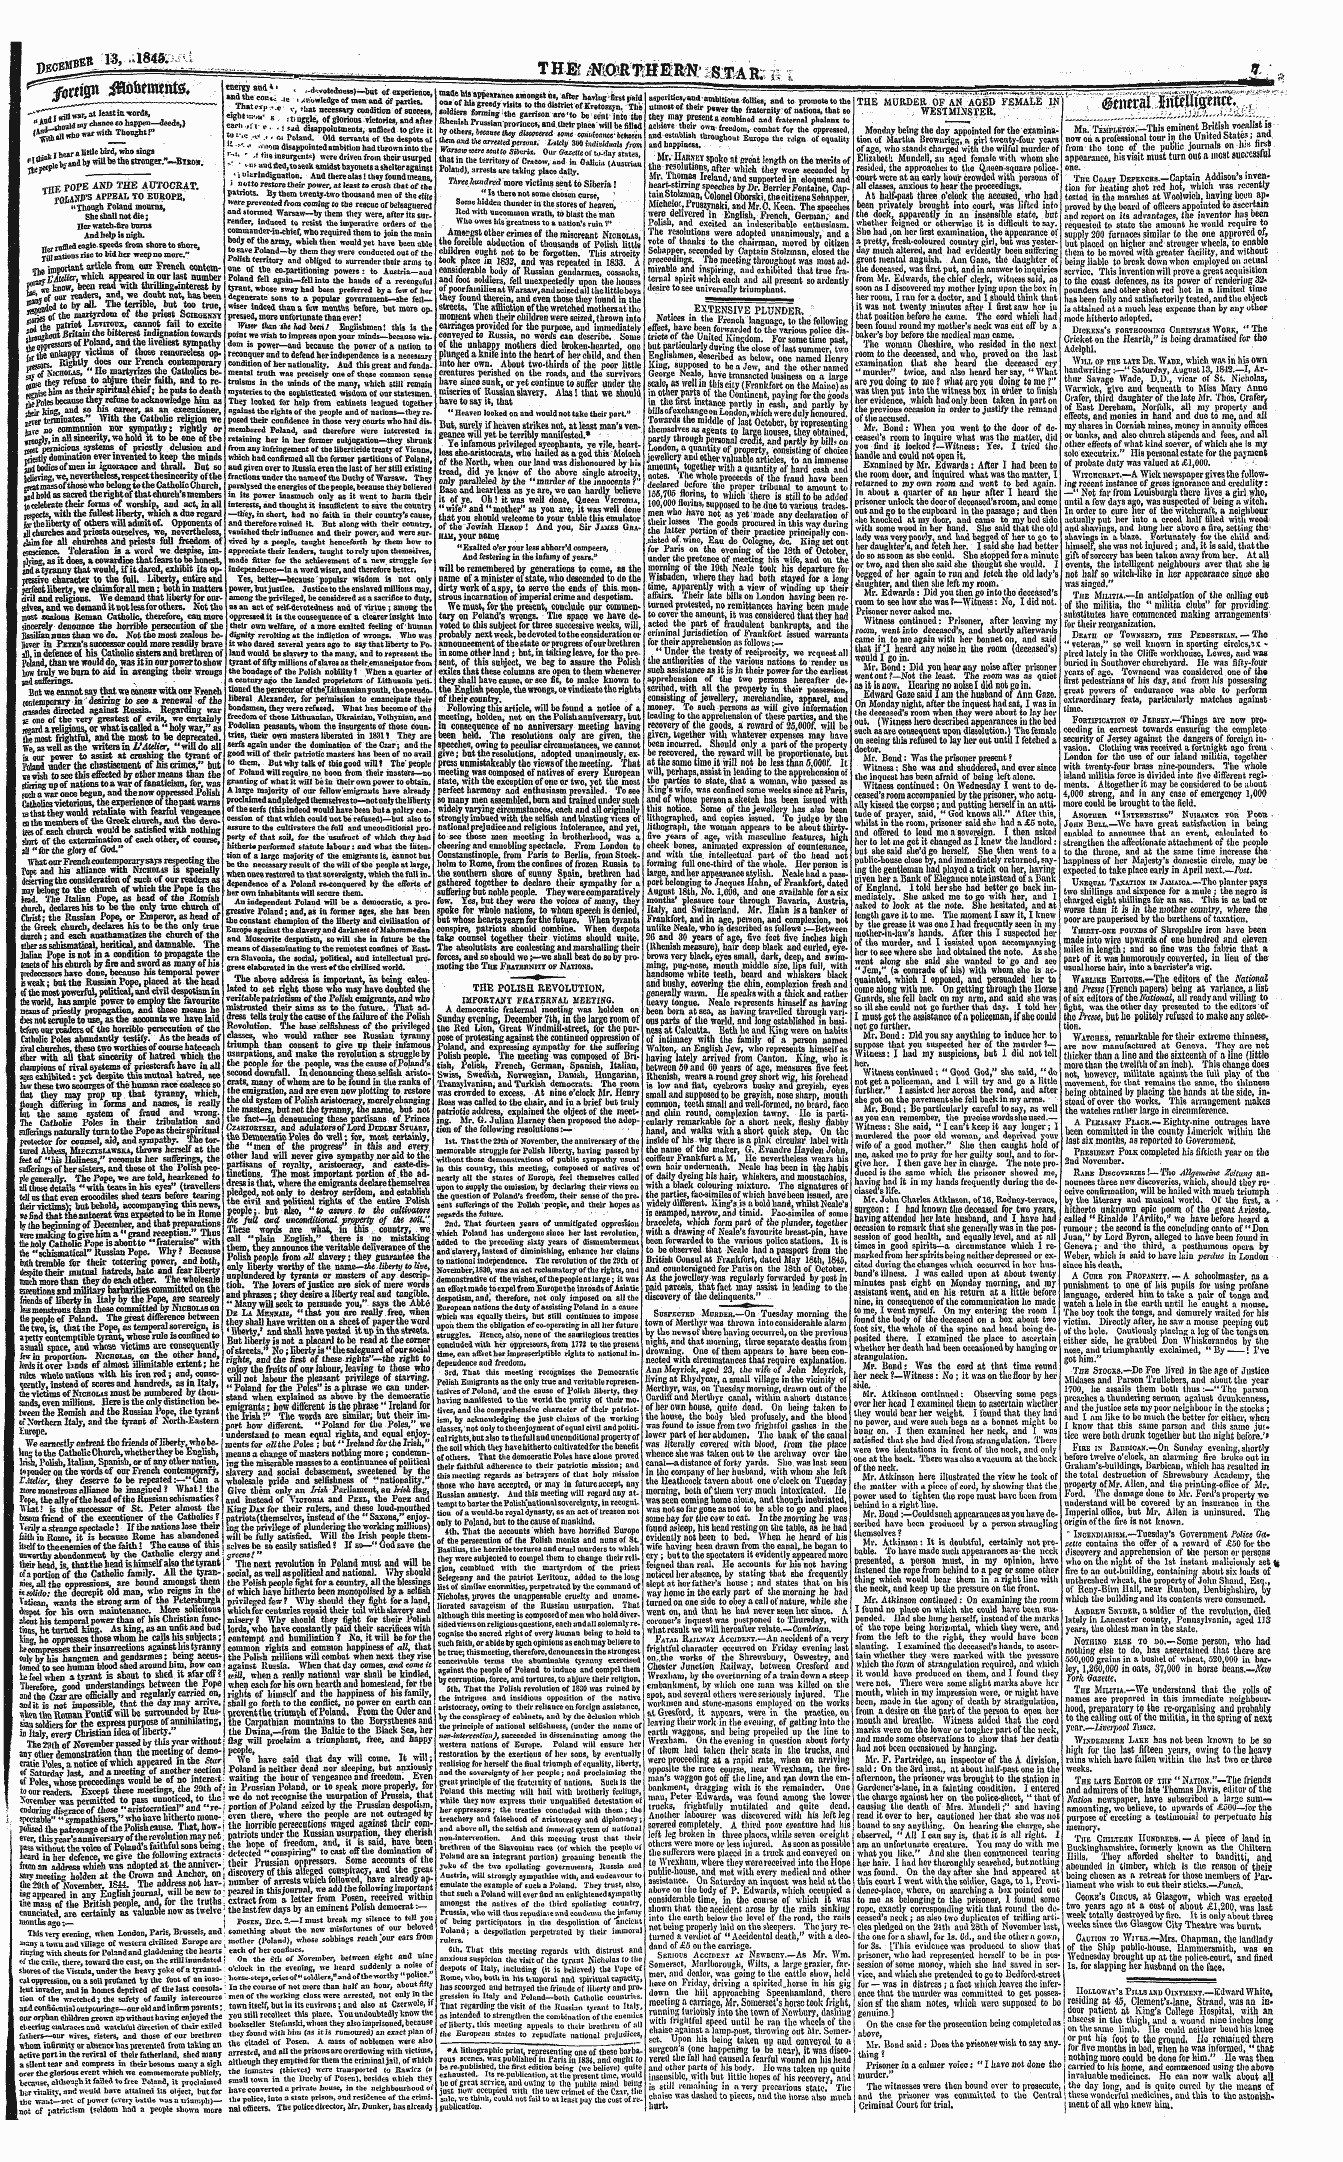 Northern Star (1837-1852): jS F Y, 2nd edition - * $Sci\W ^ Btnttnfef.